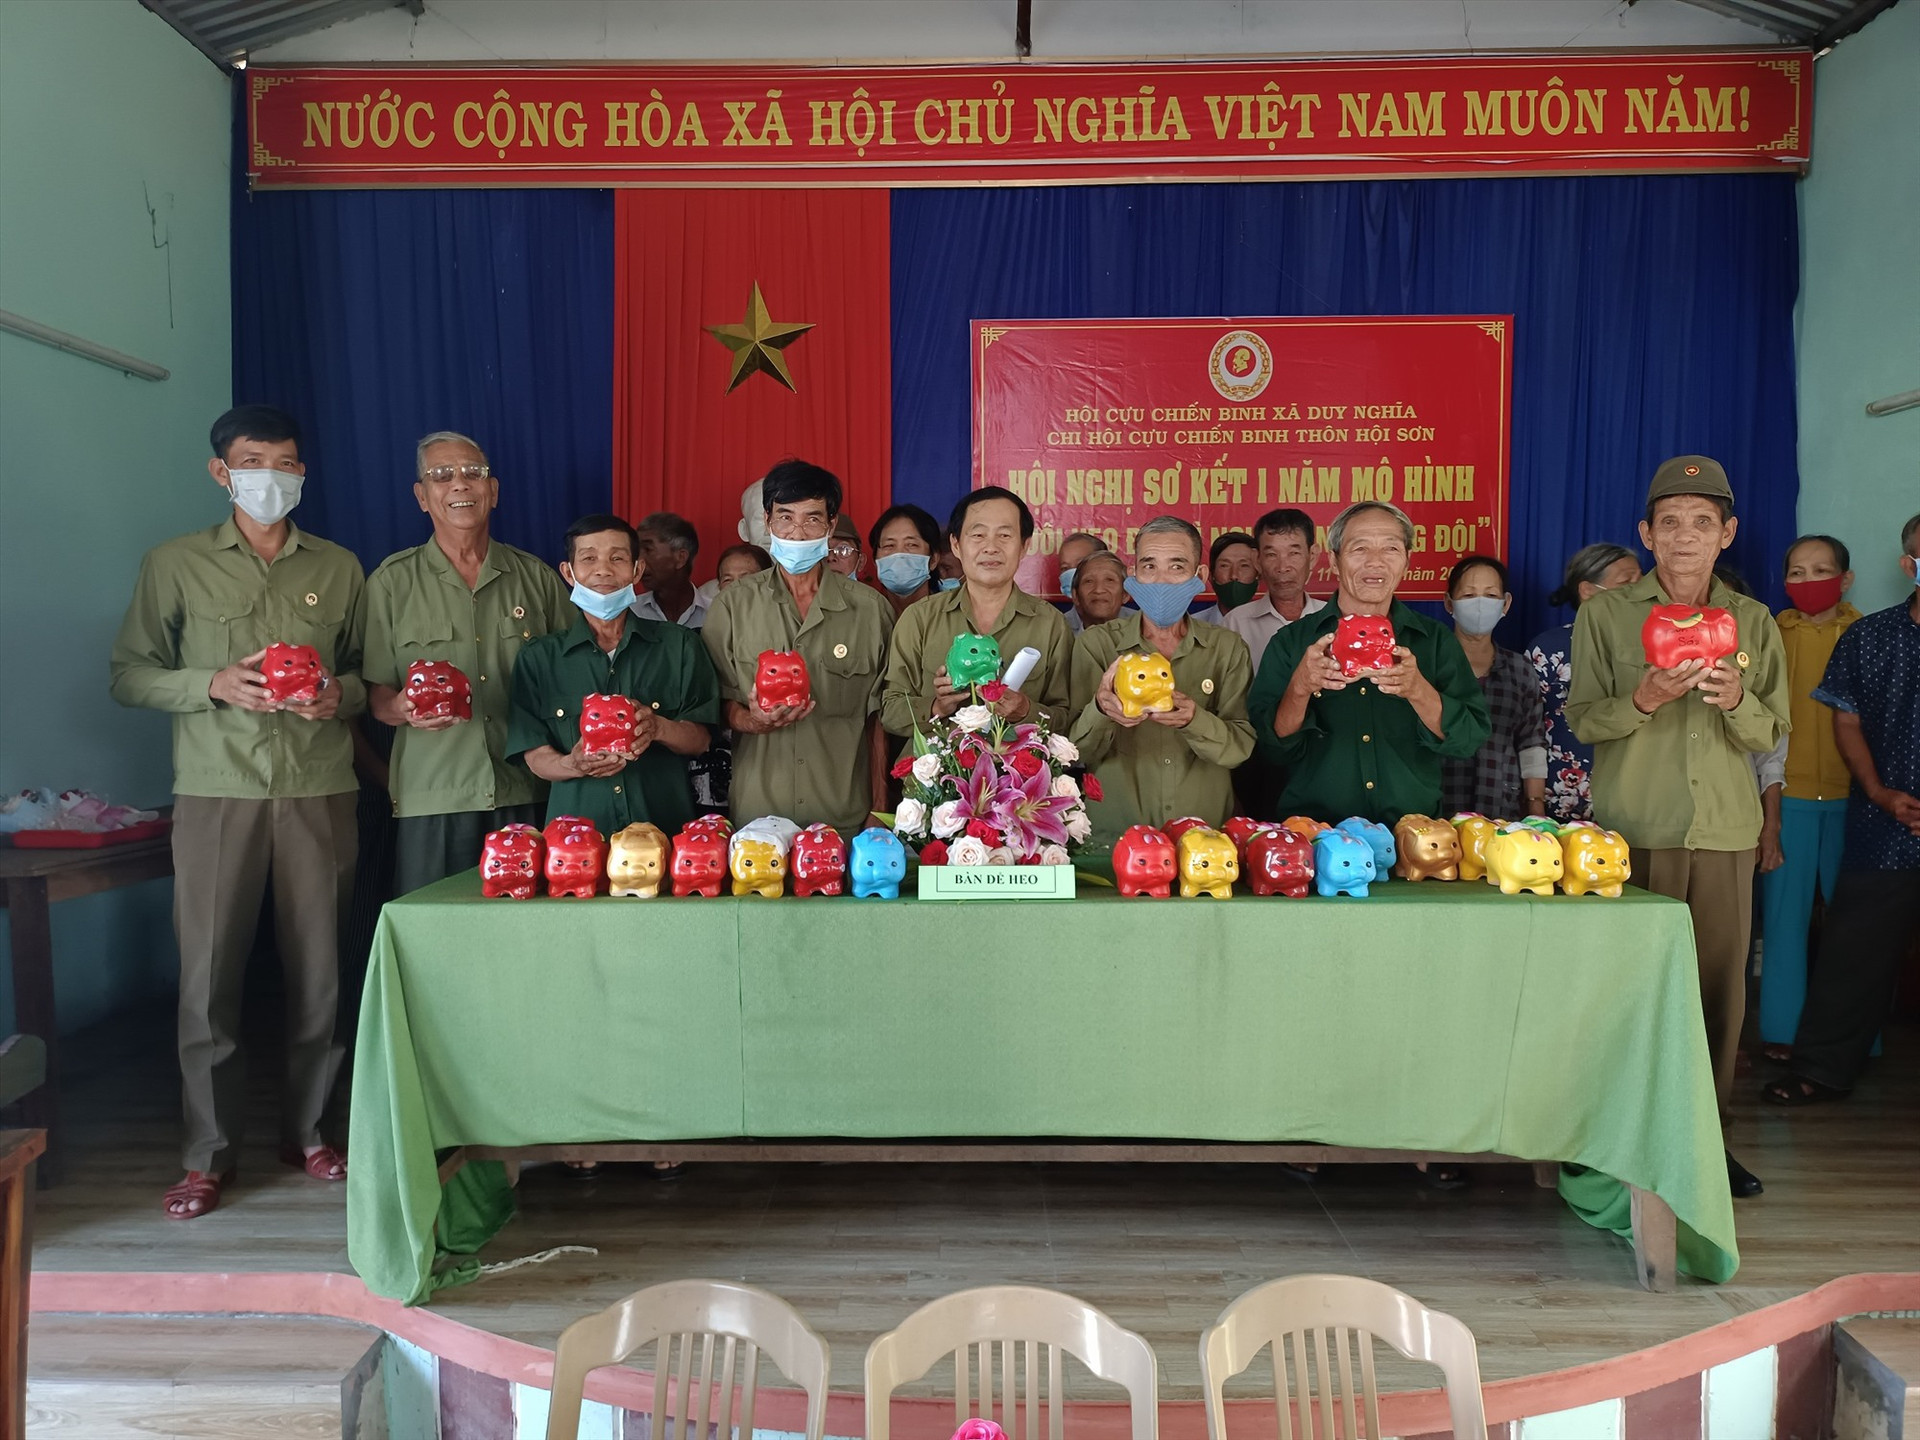 Hội viên cựu chiến binh thôn Hội Sơn (xã Duy Nghĩa) thực hiện nuôi heo đất tiết kiệm vì nghĩa tình đồng đội.